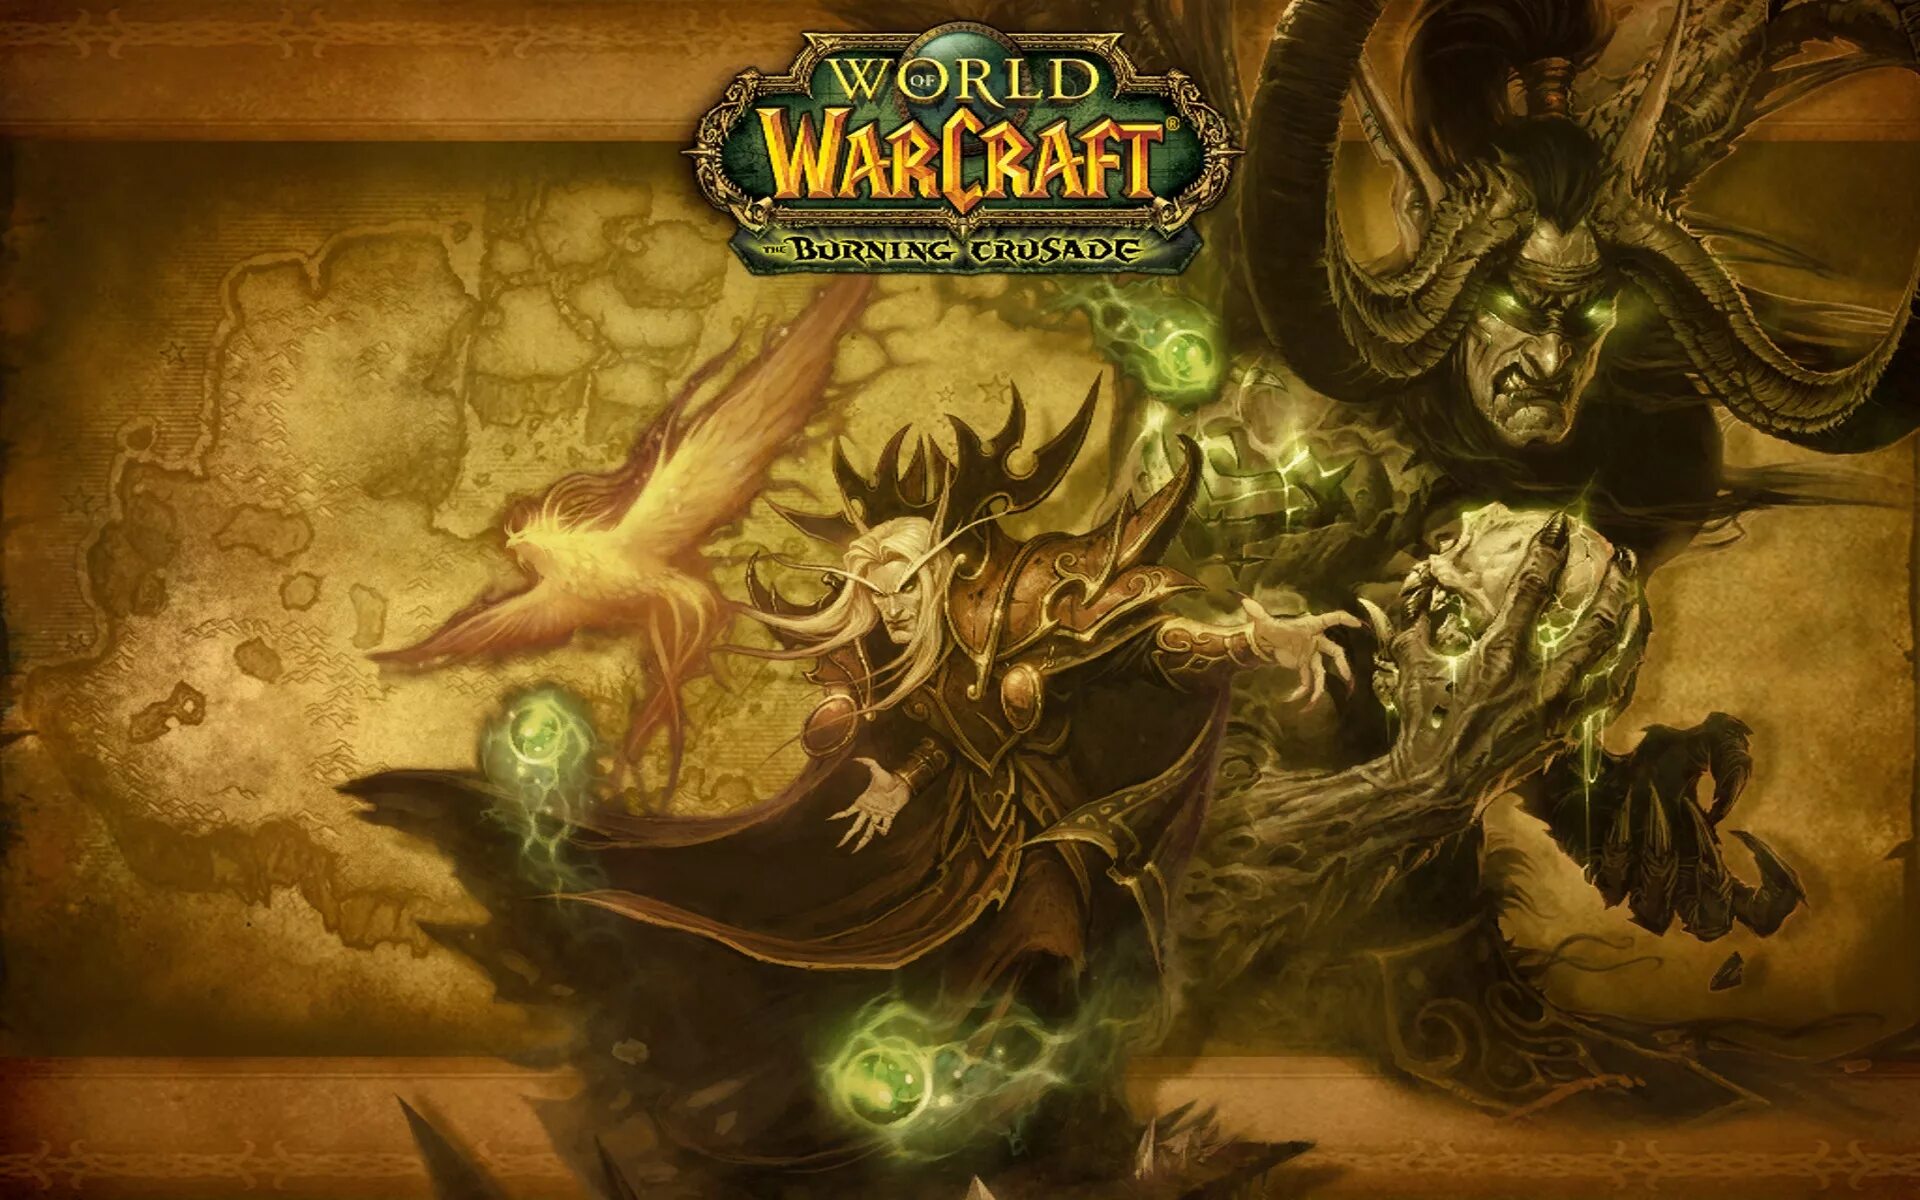 Warcraft 3 экран загрузки. Варкрафт 3 Бернинг Крусейд. World of Warcraft Burning Crusade загрузочные экраны. Wow Classic загрузочный экран. Что делать если загрузочный экран